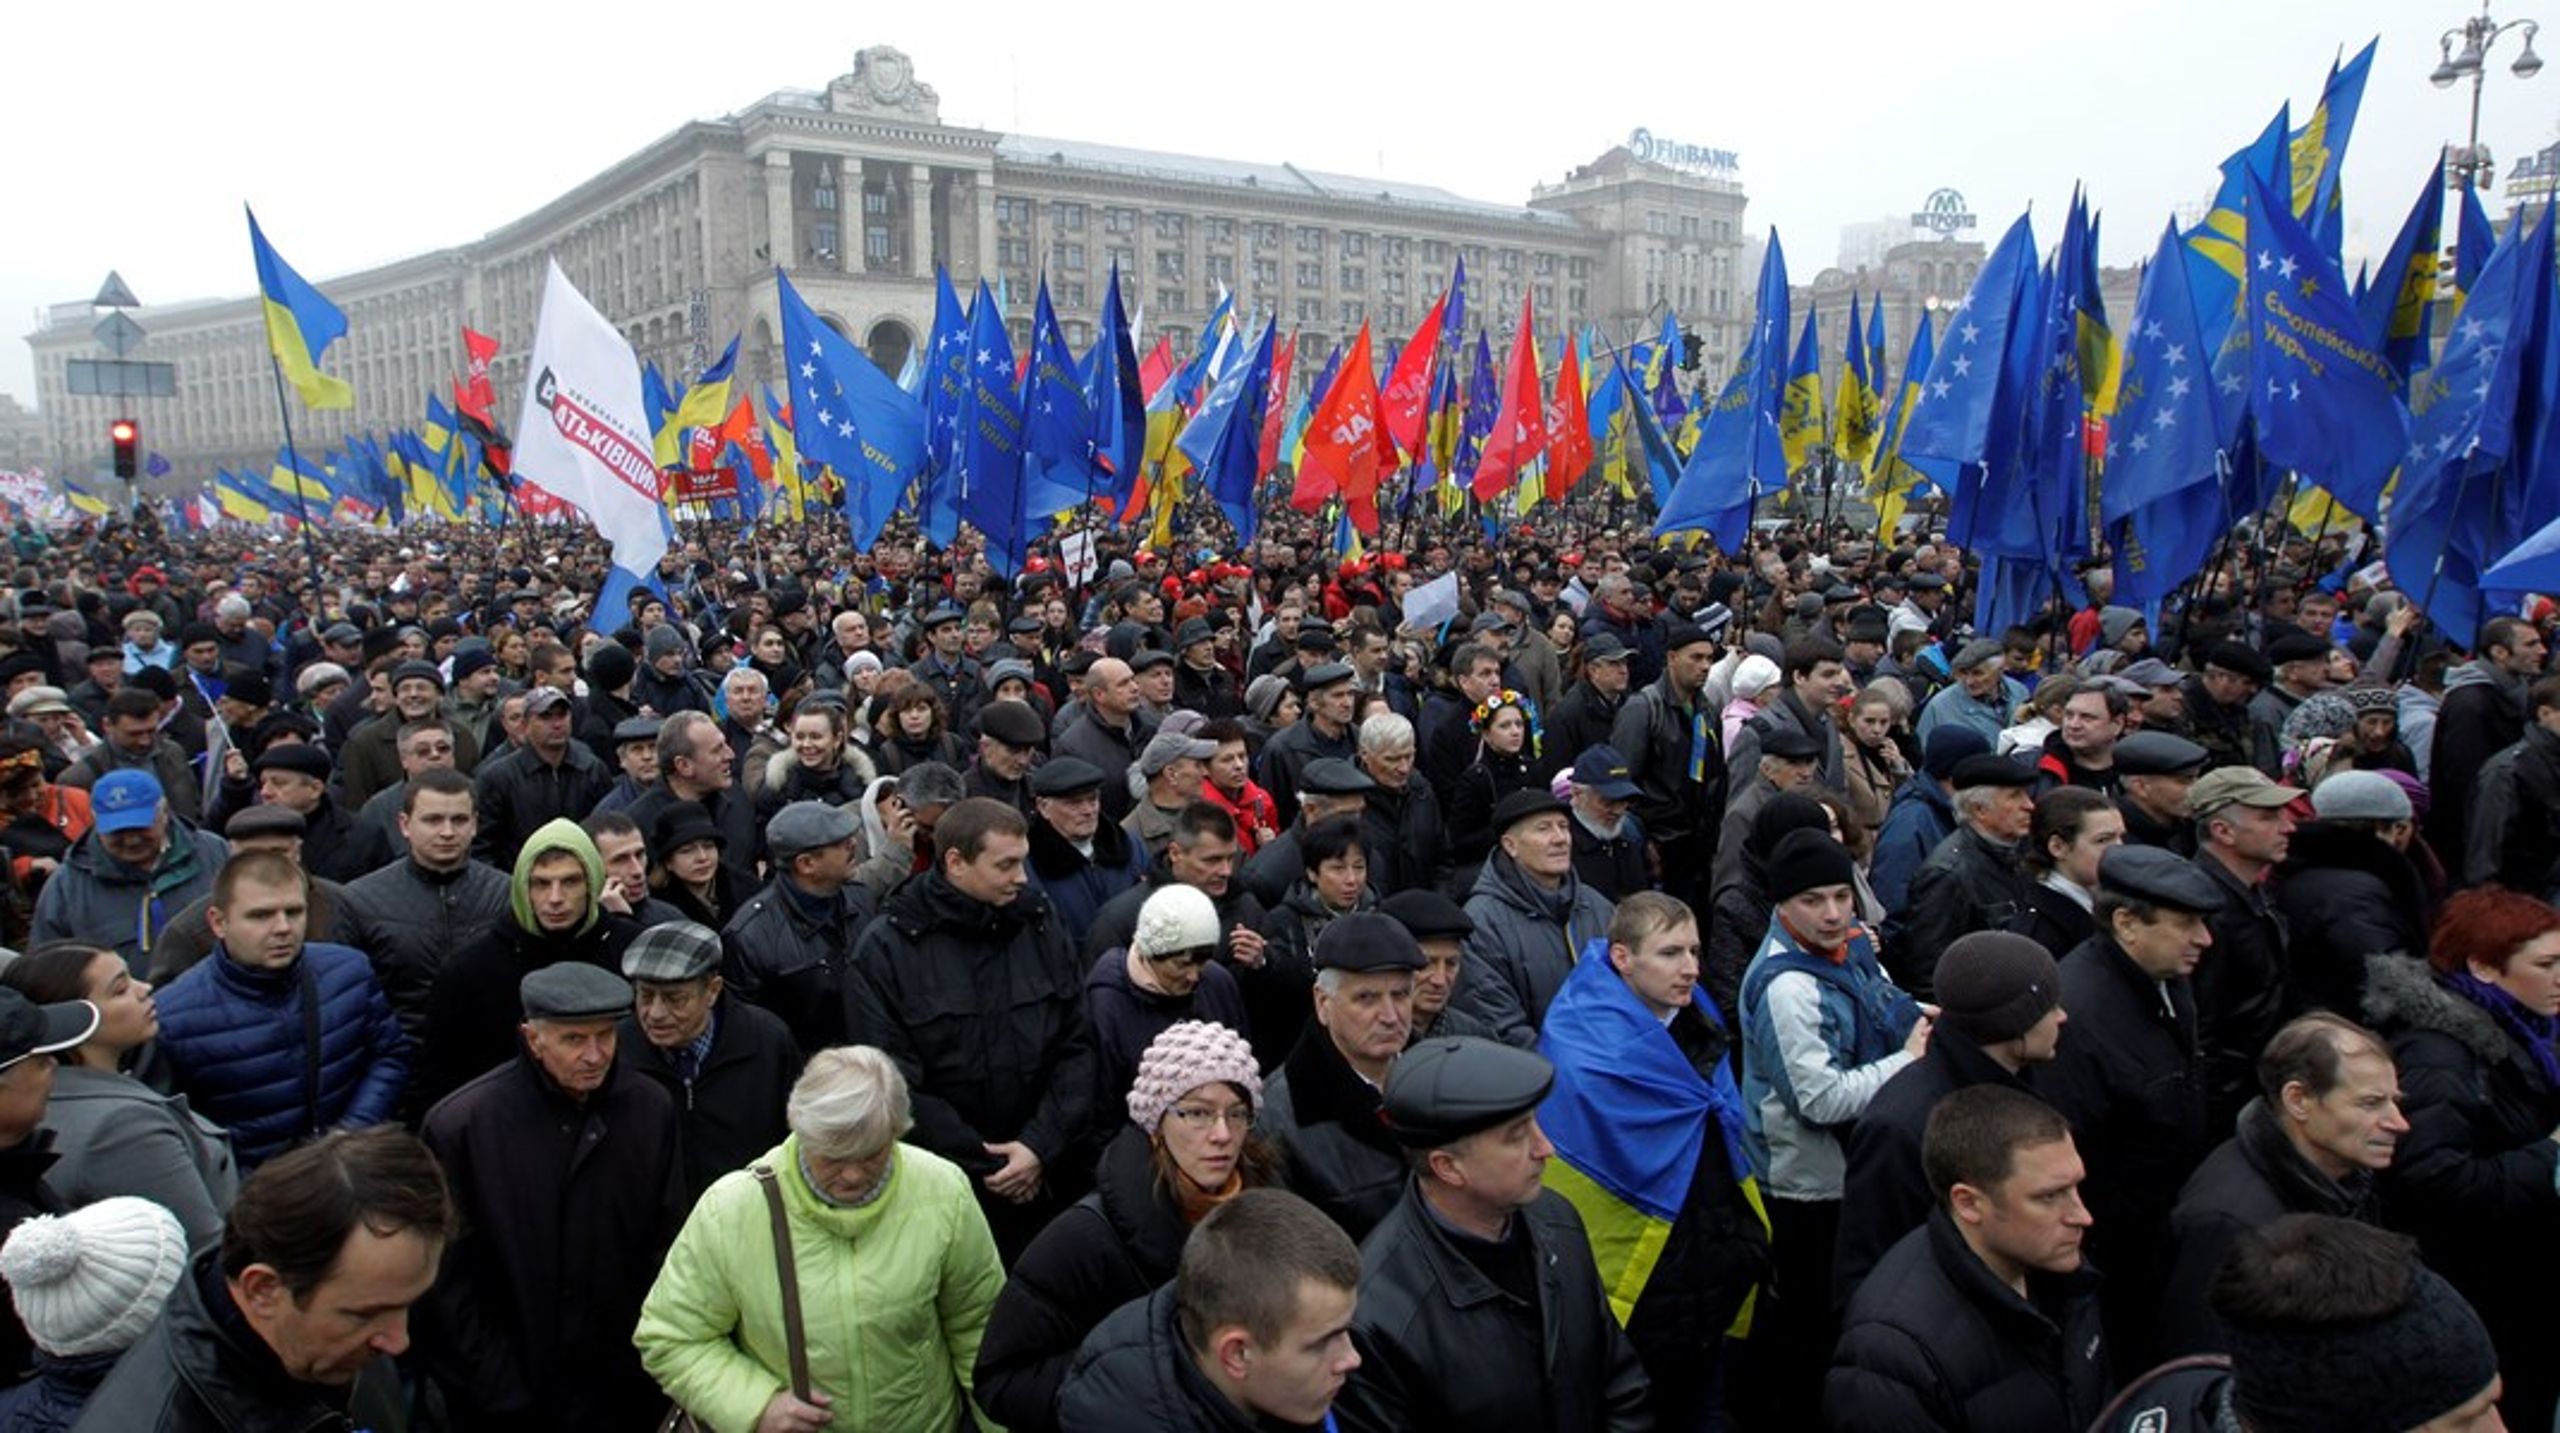 20 år efter den første store østudvidelse er der nu igen kommet appetit på at lukke nye lande ind i EU. Ukraine&nbsp;er et af de varme navne. Her er hundredtusindvis af ukrainere gået på gaden ved de såkaldte Euromajdan-demonstrationer.